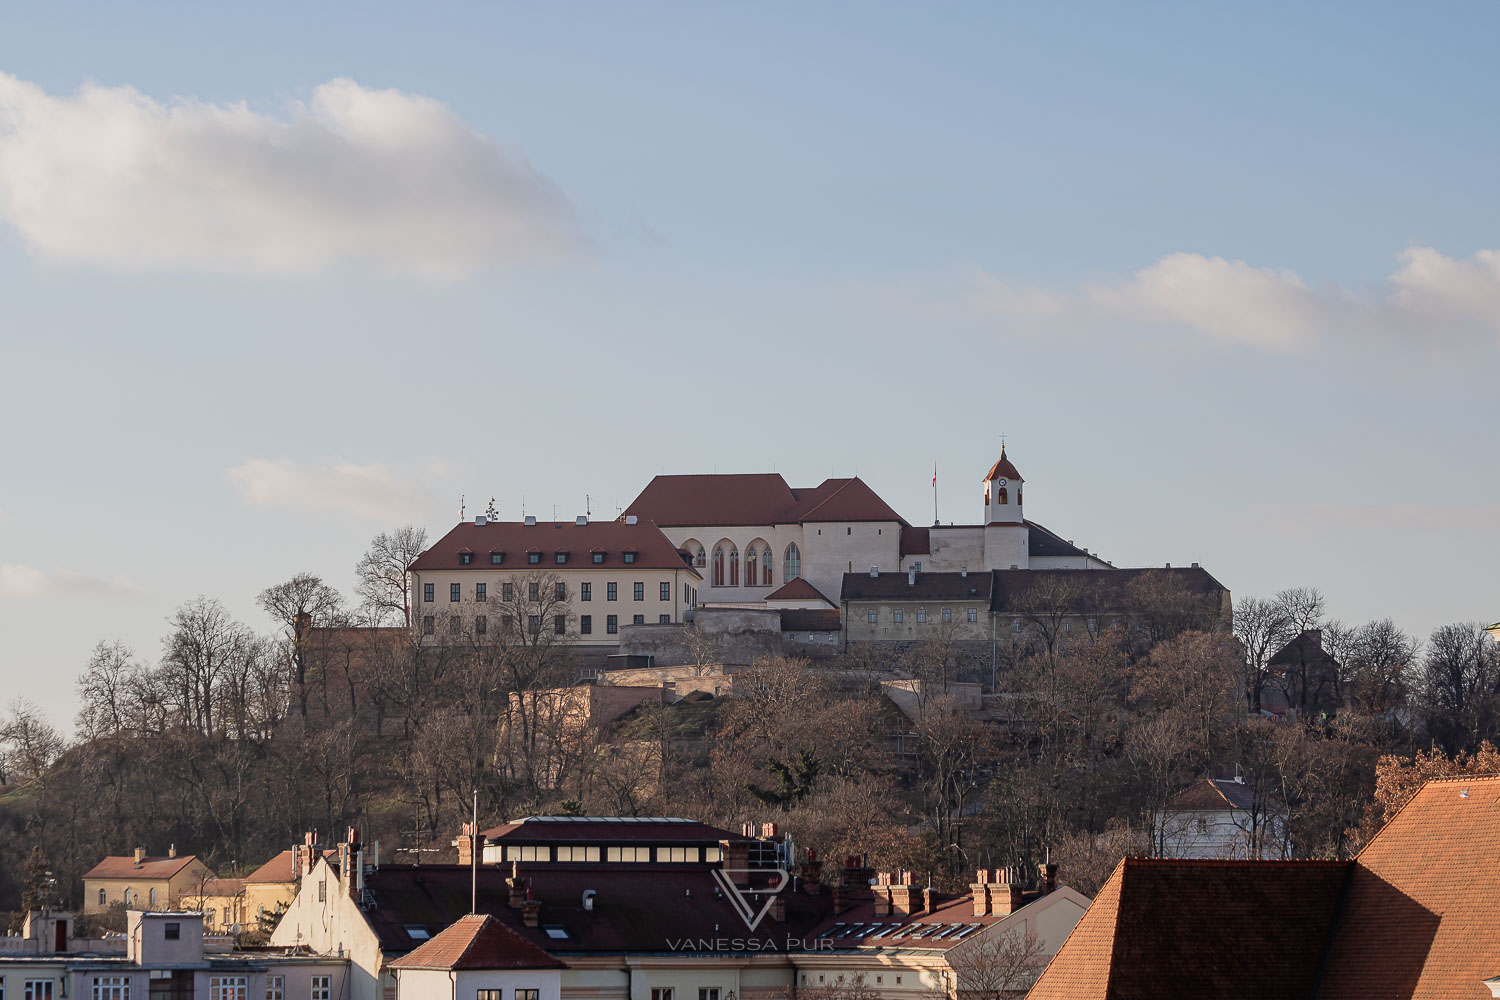 Brünn Sehenswürdigkeiten Top 10 - Tschechien Wochenendreise nach Brno - Beste Brünn Sehenswürdigkeiten in Tschechien. Brno, die tschechische Stadt, die gerne als Wochenendreise besucht wird und viele schöne